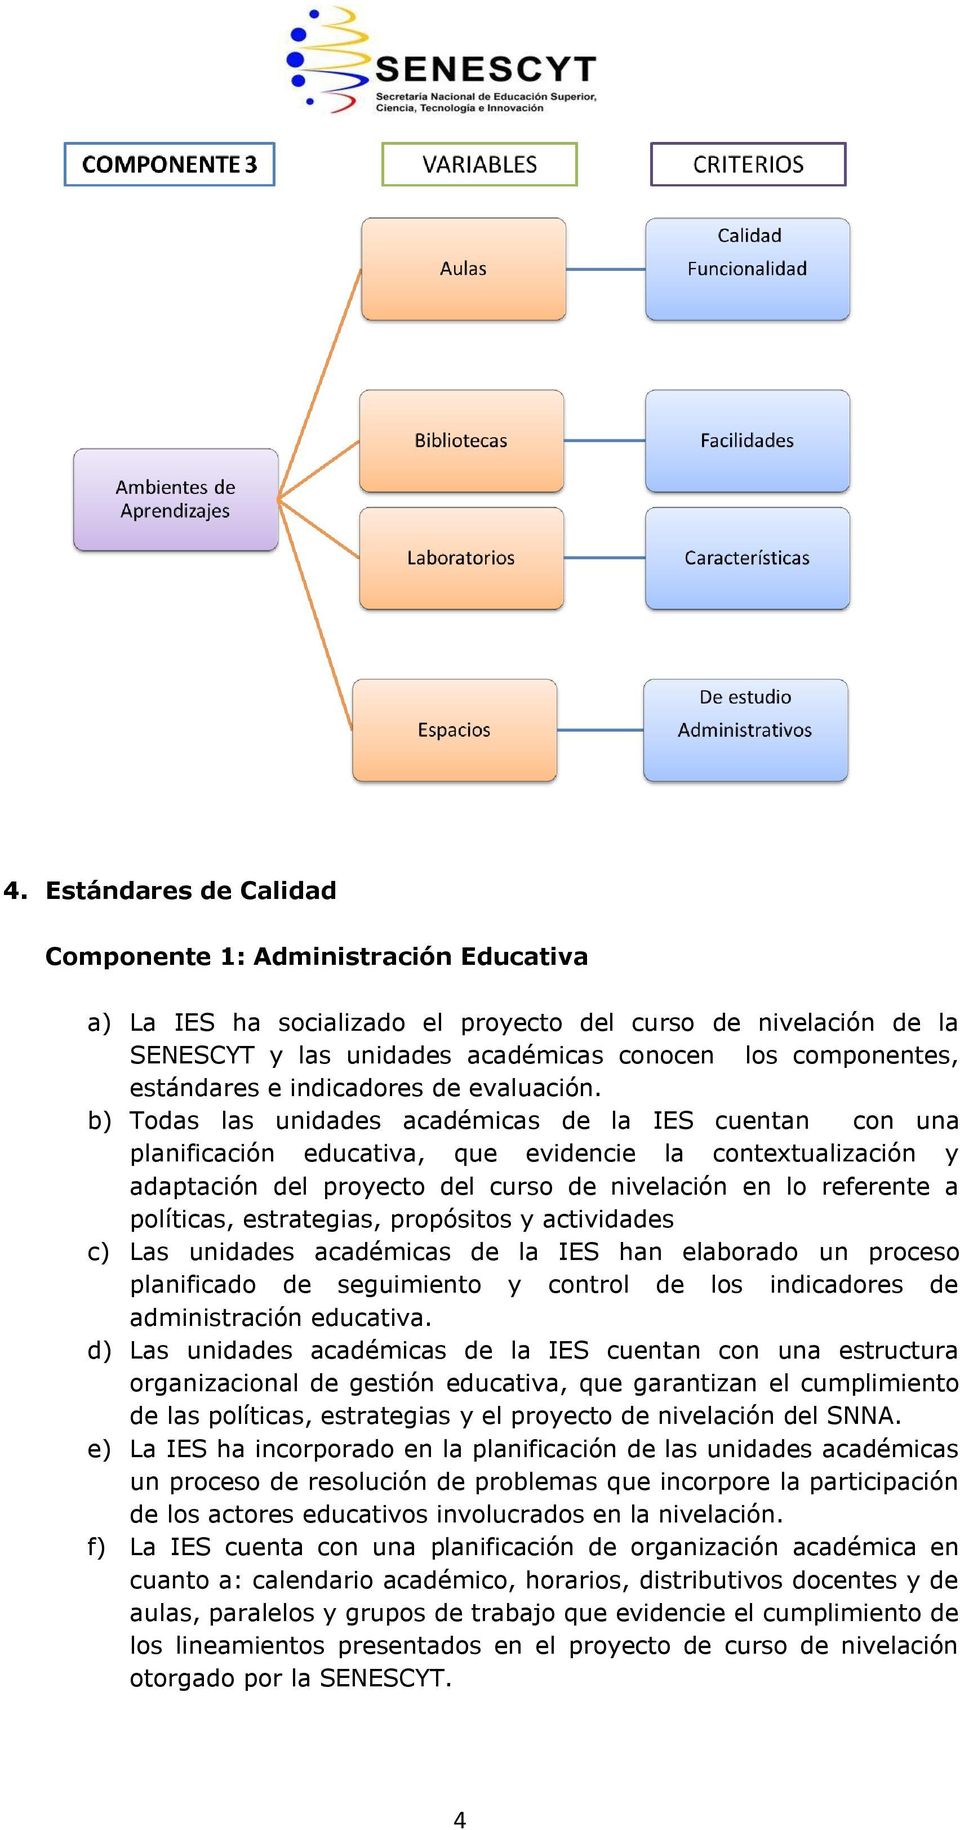 b) Todas las unidades académicas de la IES cuentan con una planificación educativa, que evidencie la contextualización y adaptación del proyecto del curso de nivelación en lo referente a políticas,